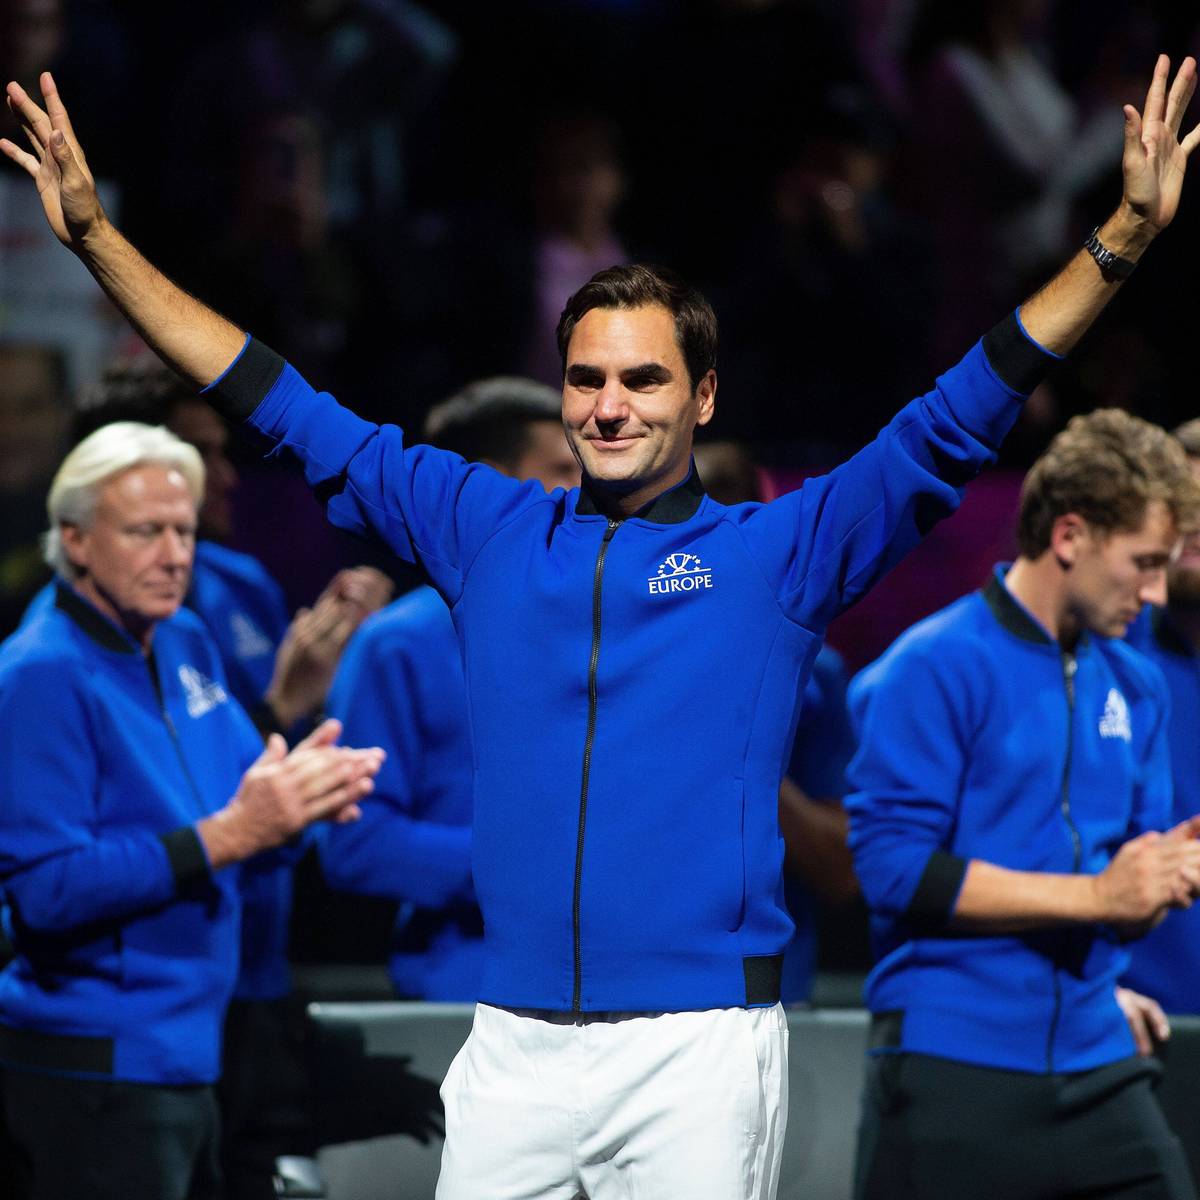 Große Emotionen: Federer verabschiedet sich von Tennis-Bühne